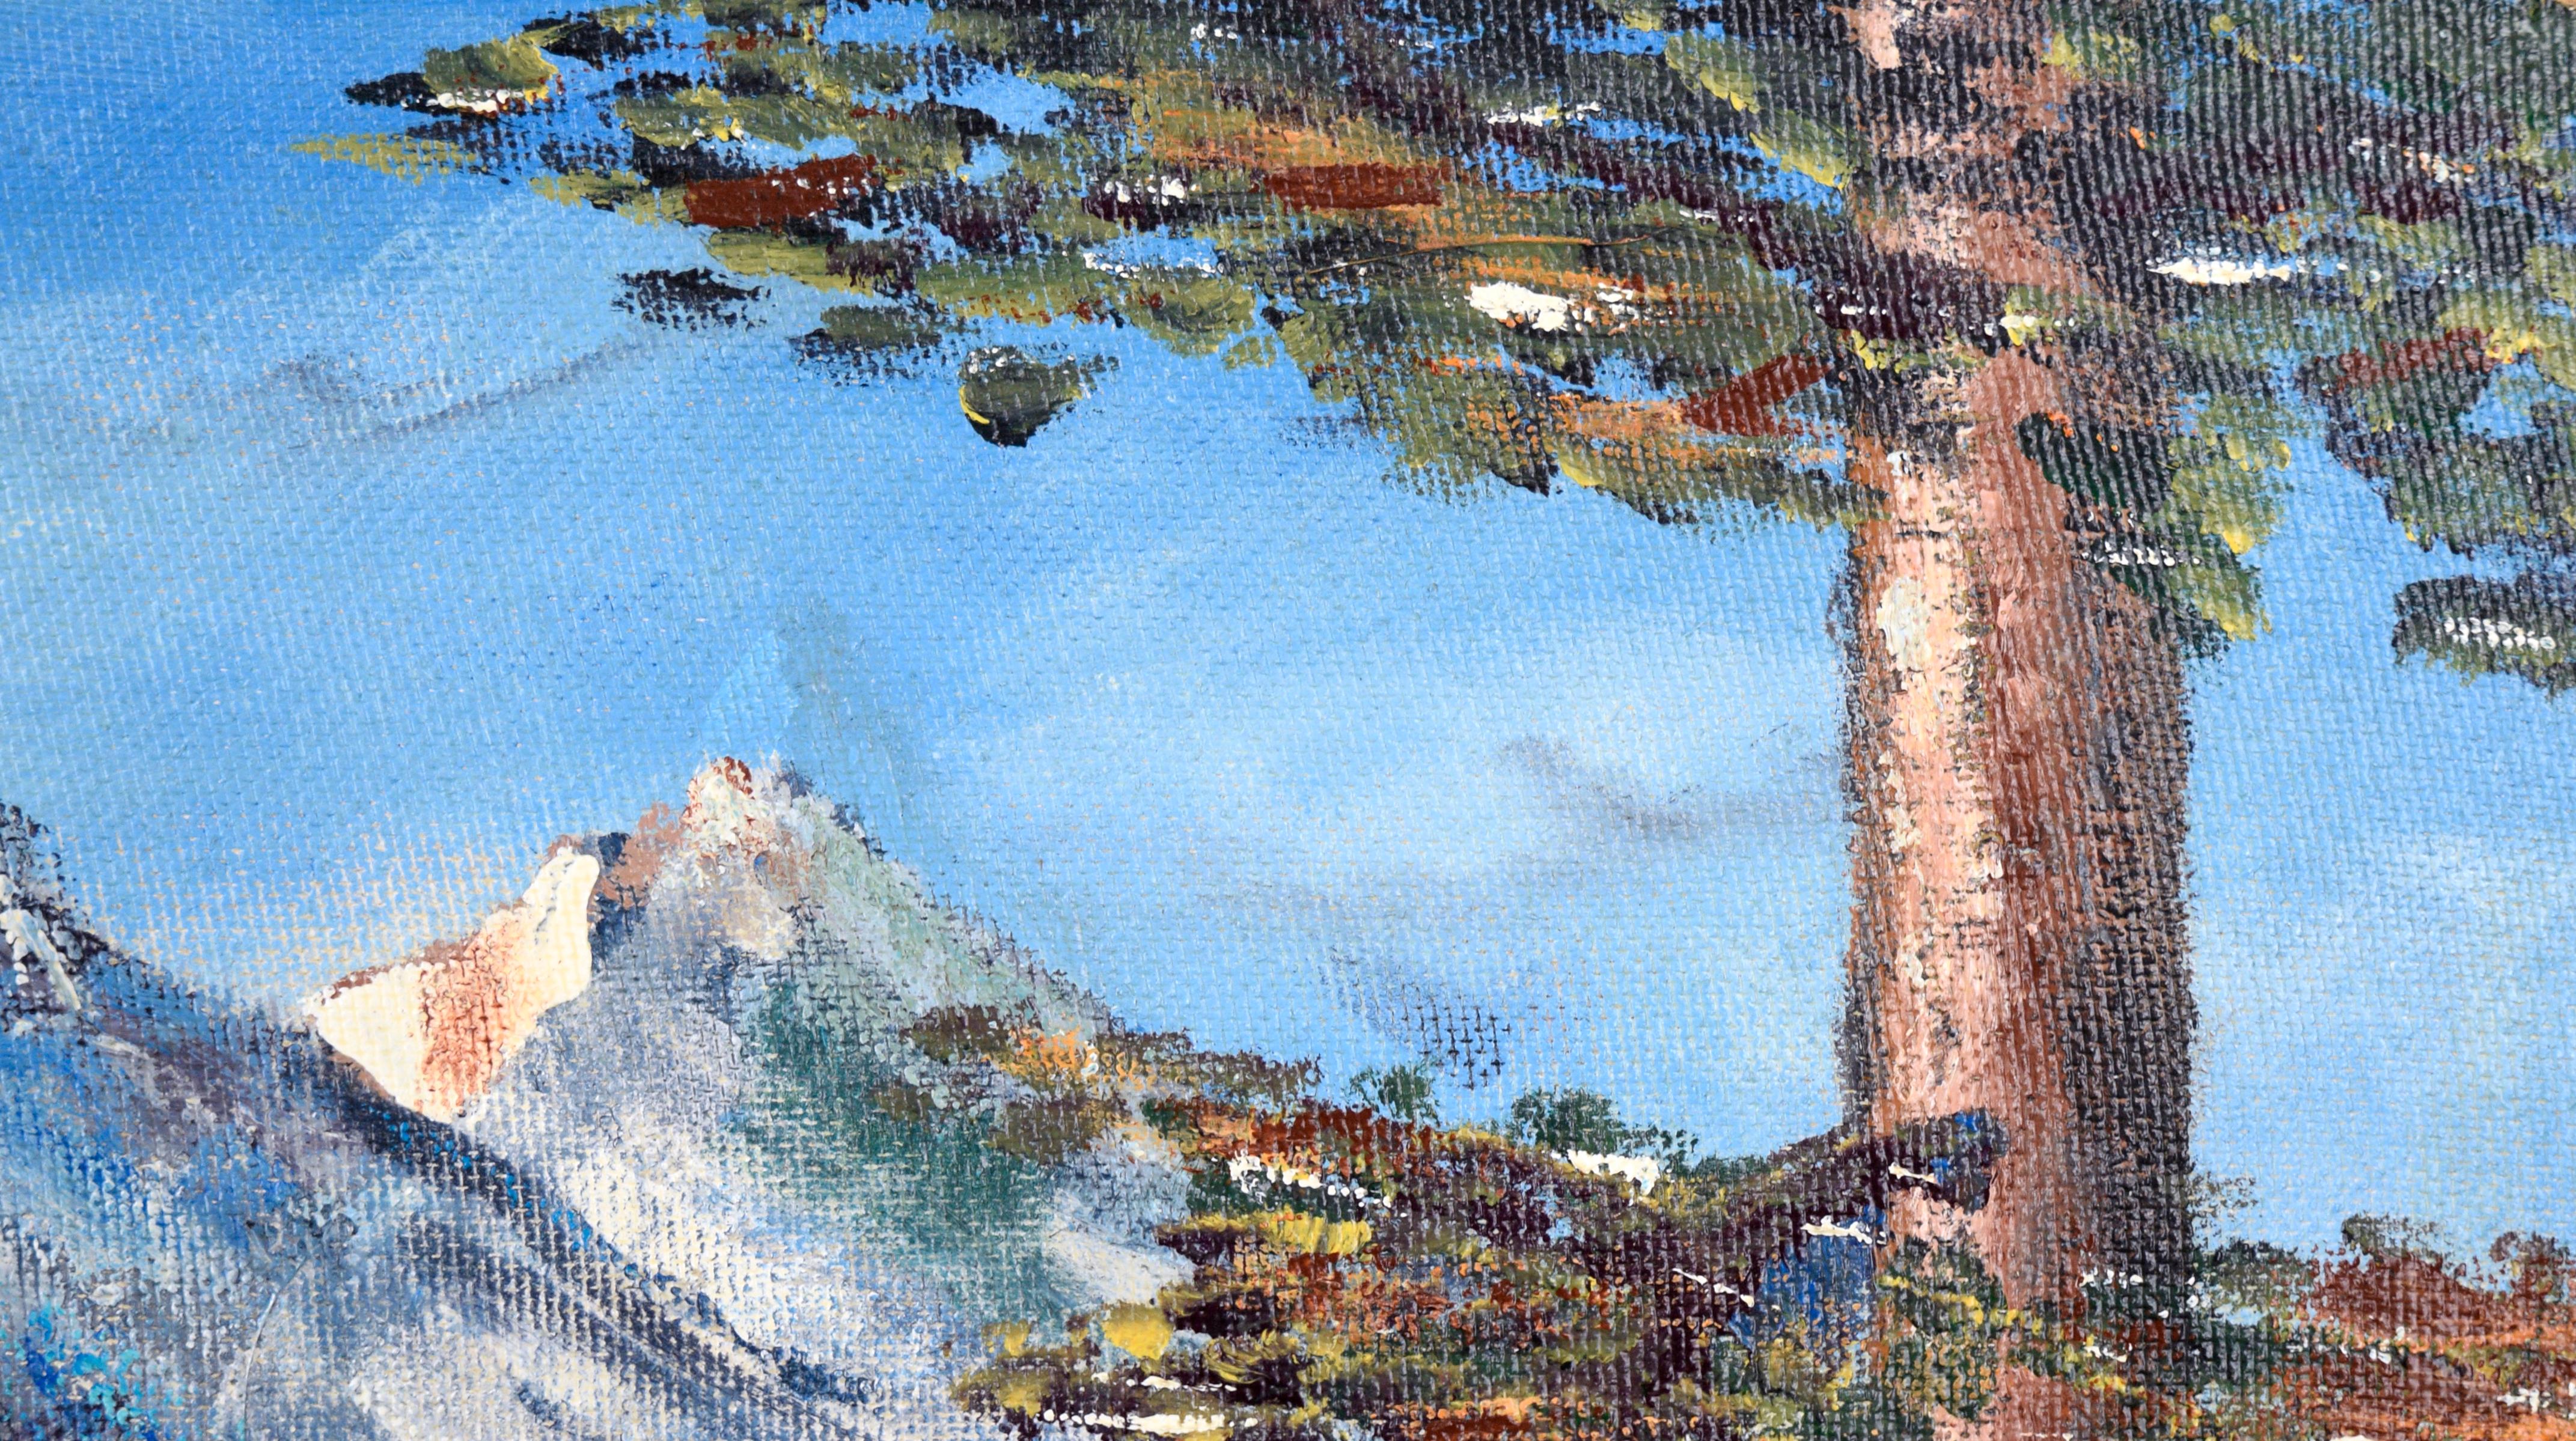 Sierra Mountain Lake Landscape von L.V. Verbrennungen (Braun), Landscape Painting, von L. V. Burns